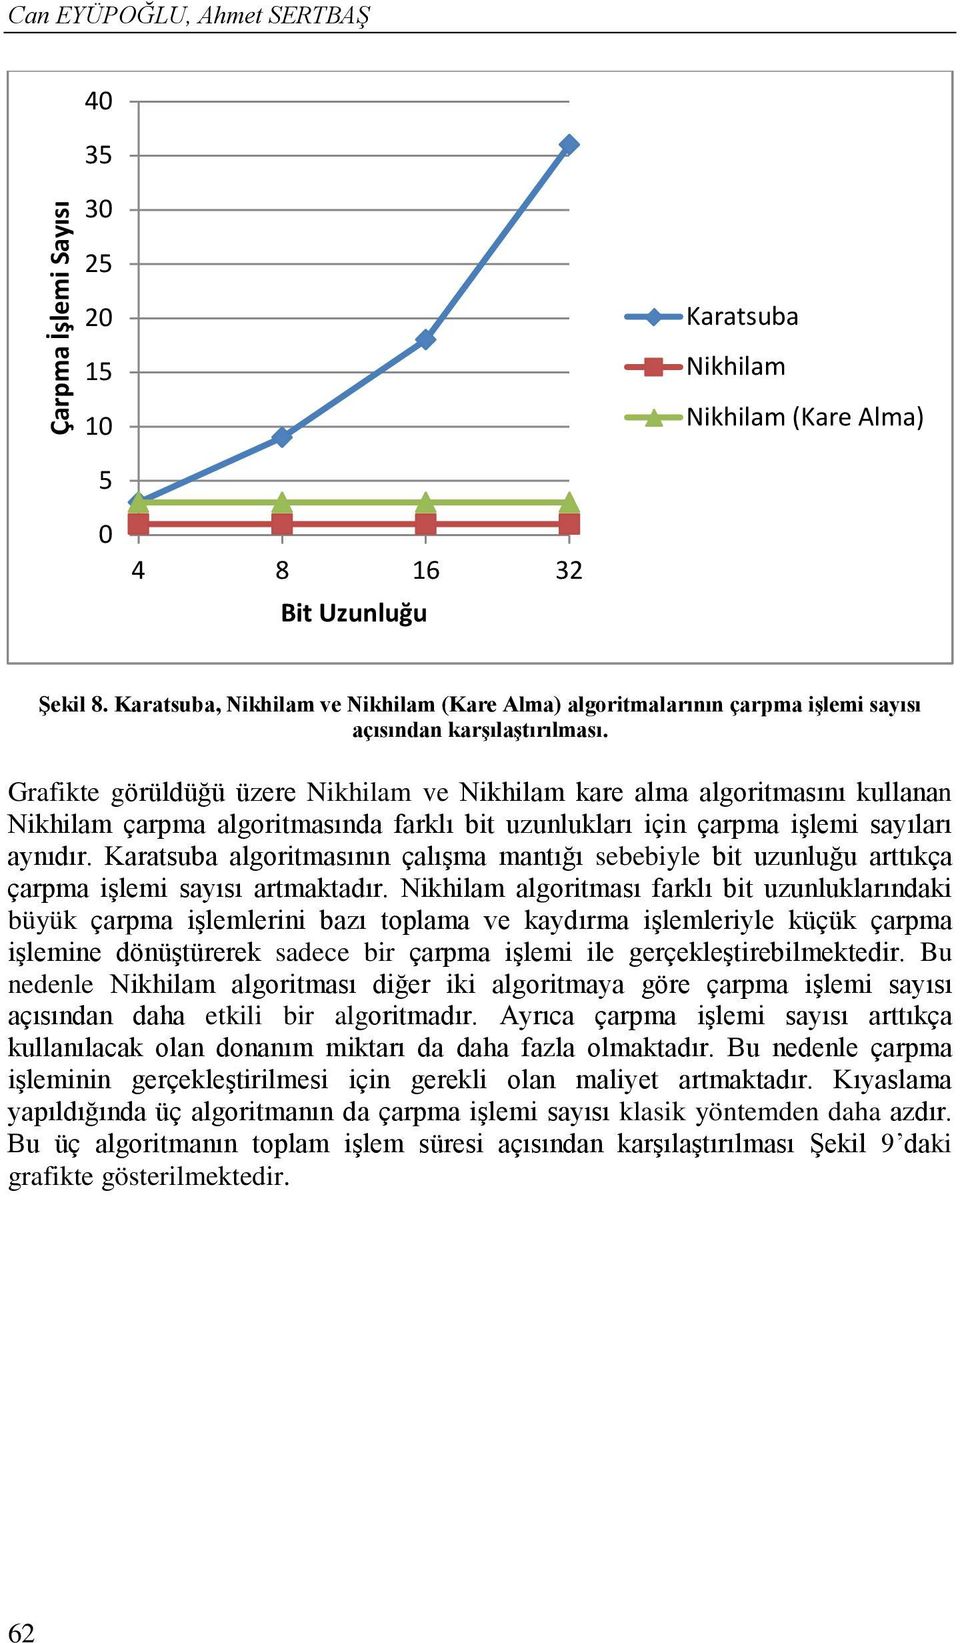 Grafikte görüldüğü üzere Nikhilam ve Nikhilam kare alma algoritmasını kullanan Nikhilam çarpma algoritmasında farklı bit uzunlukları için çarpma işlemi sayıları aynıdır.